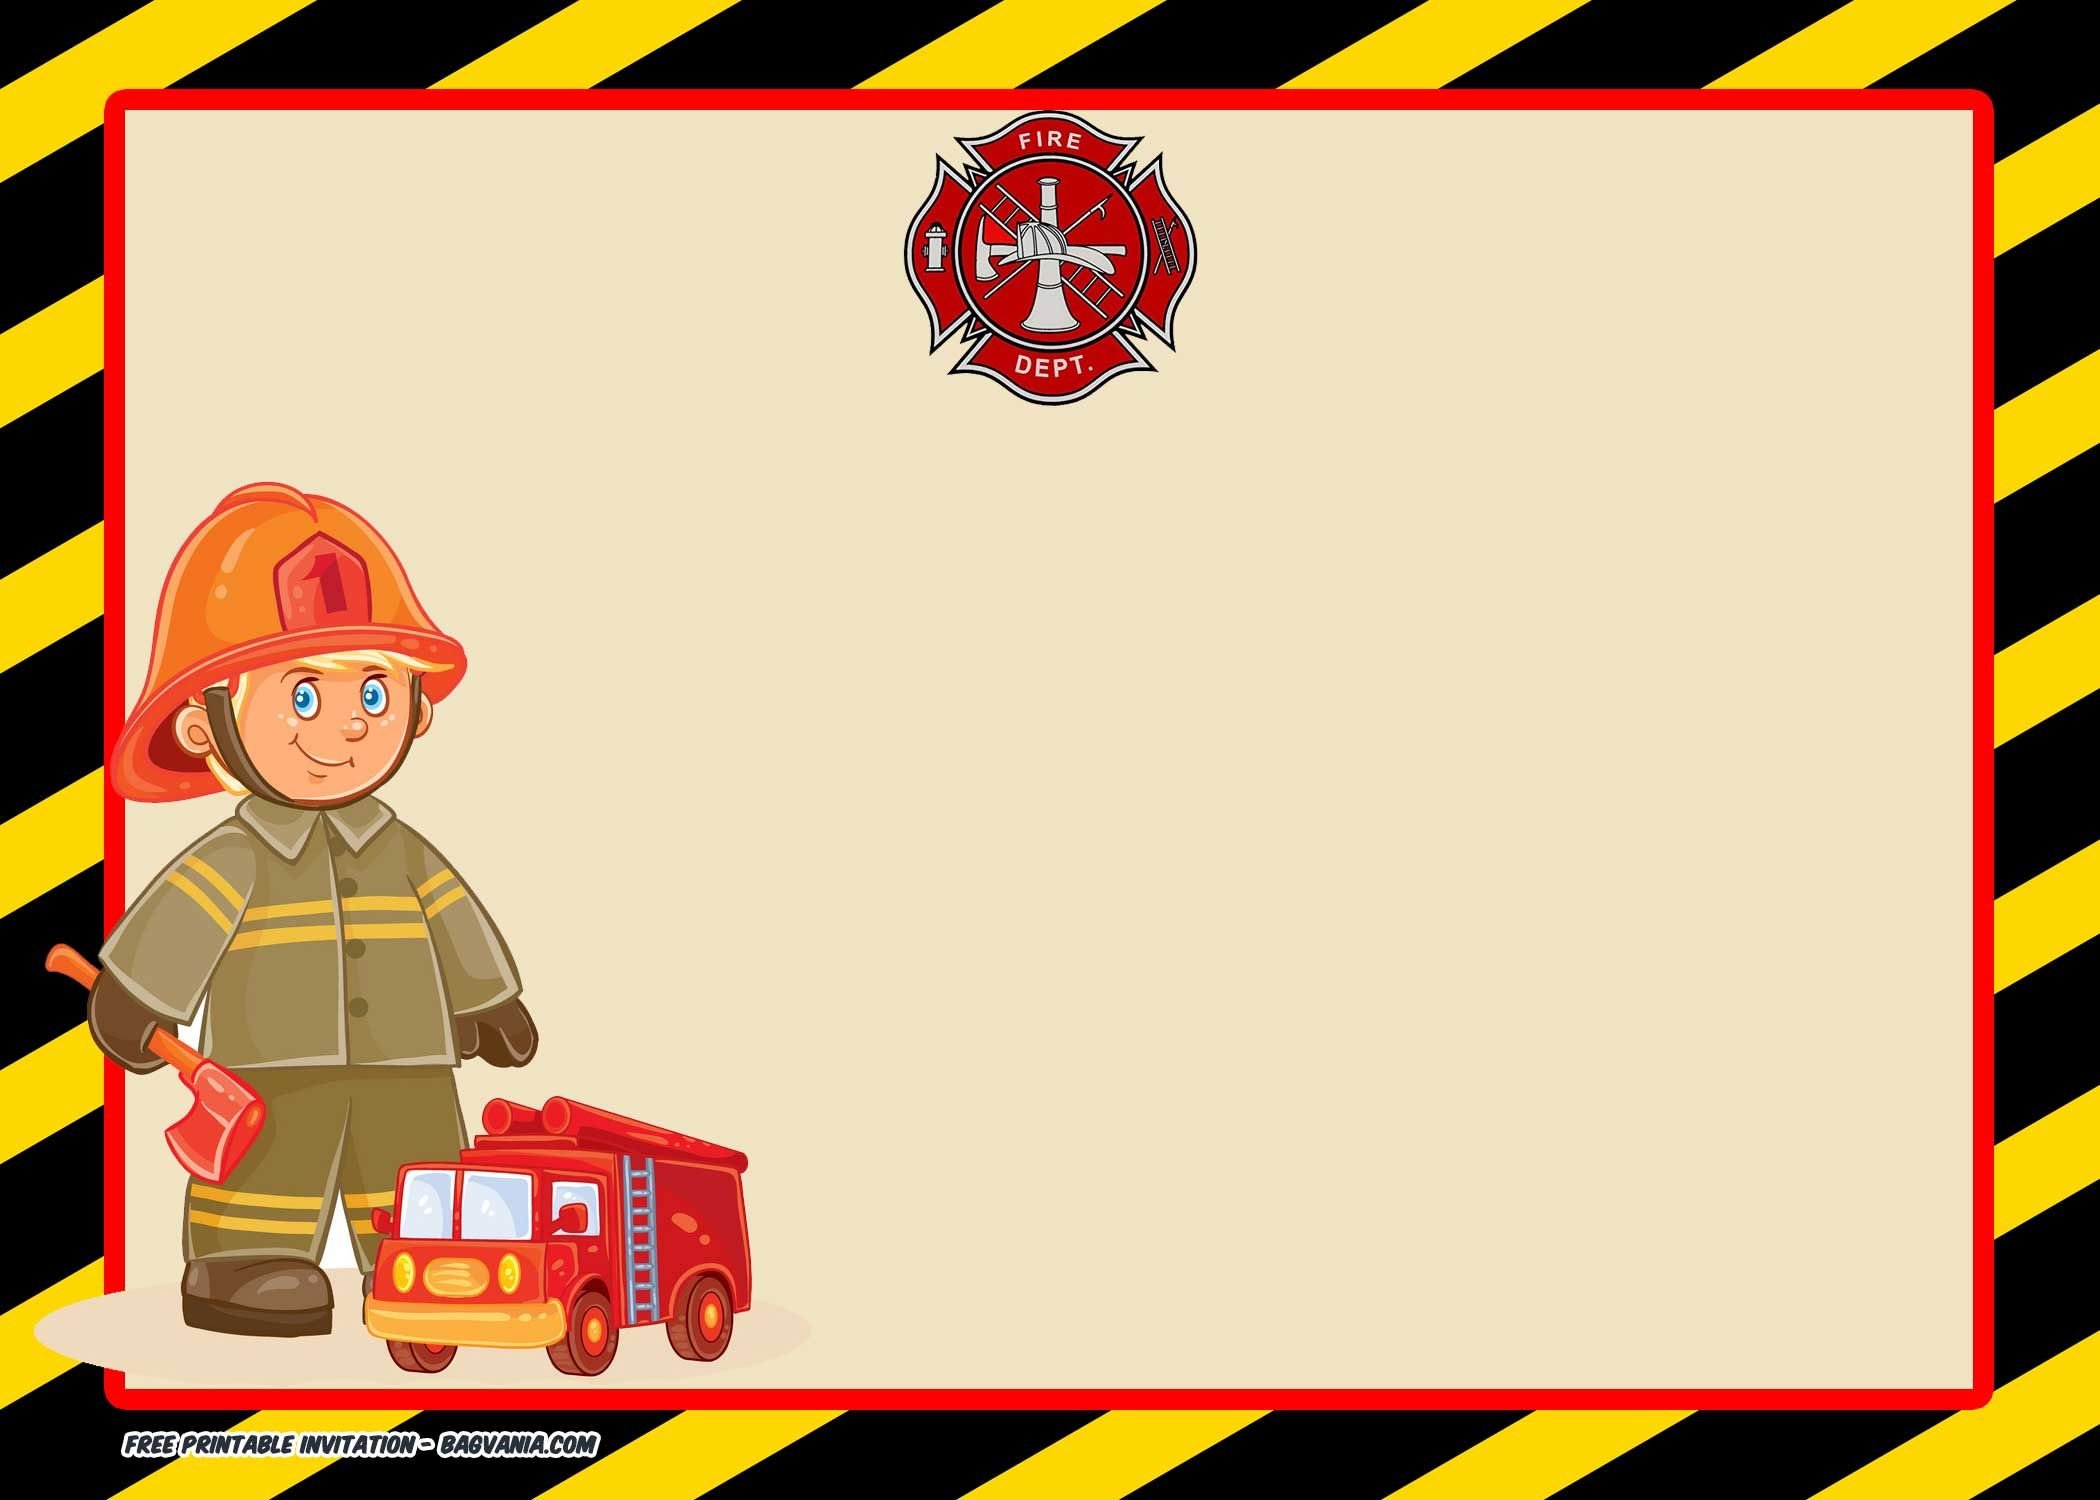 Рамка пожарная безопасность